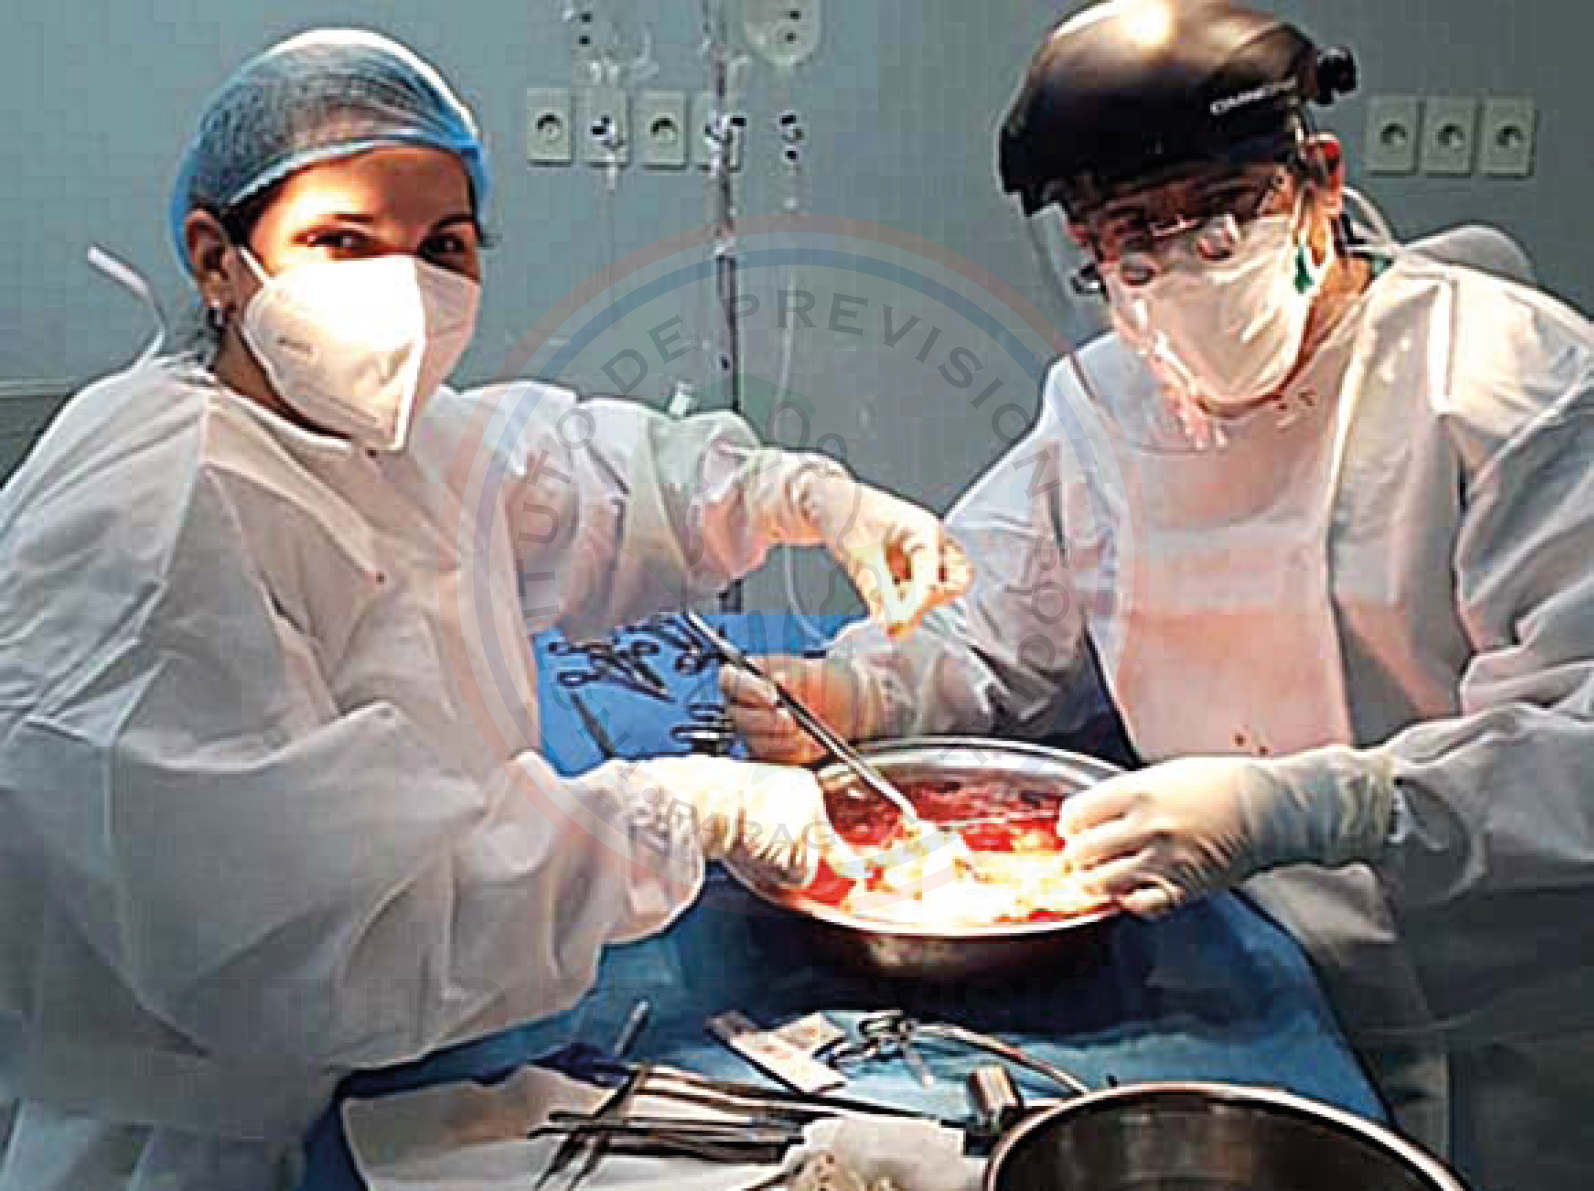 Equipo de médicos especialistas en el IPS realizan trasplantes en tiempos de Covid-19